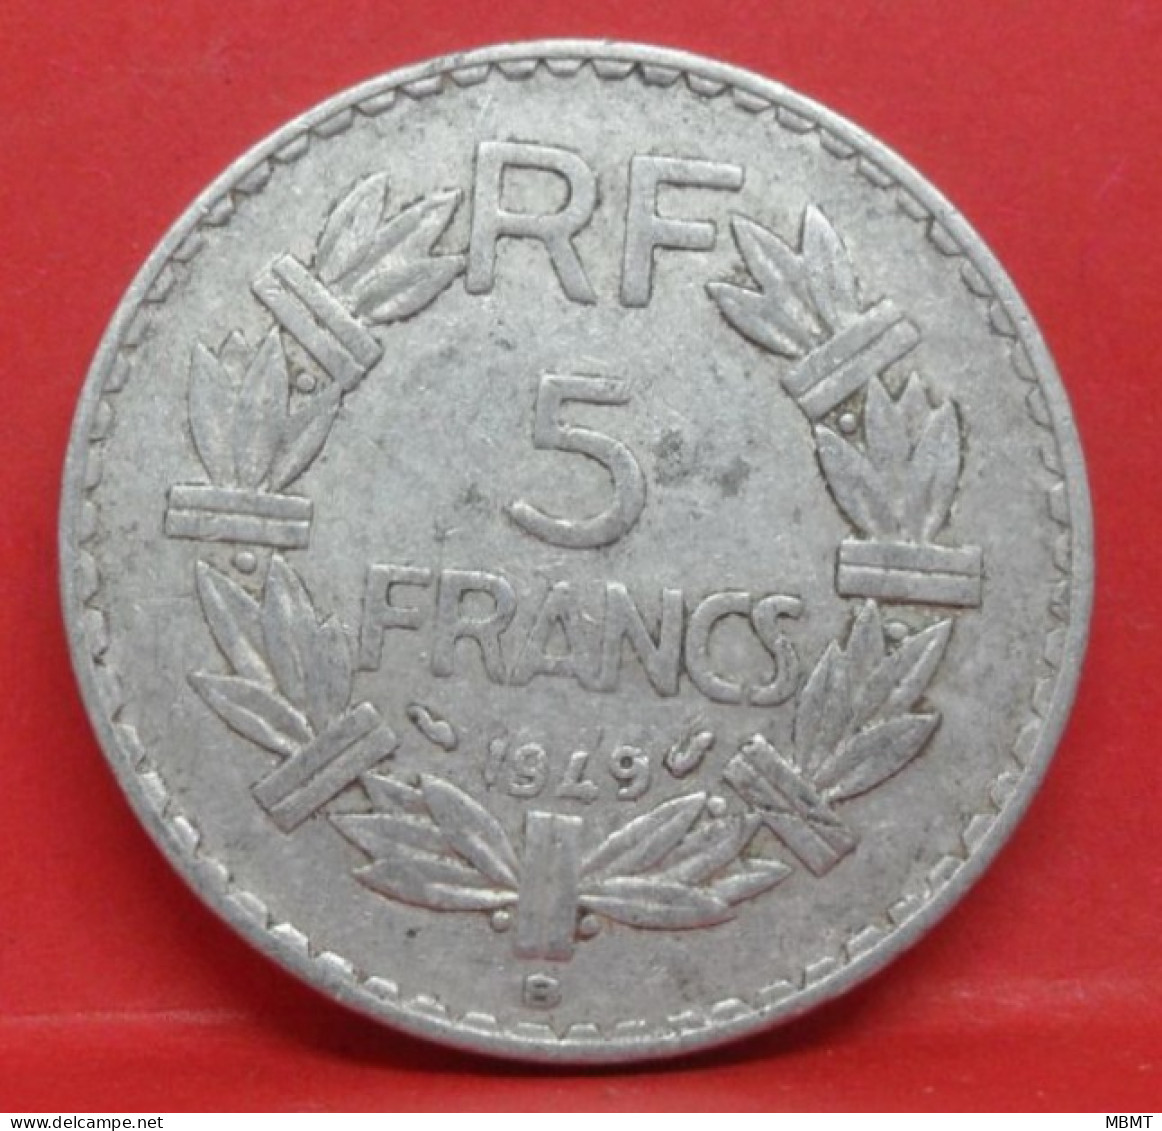 5 Francs Lavrillier Alu 1949 B - TB - Pièce Monnaie France - Article N°844 - 5 Francs